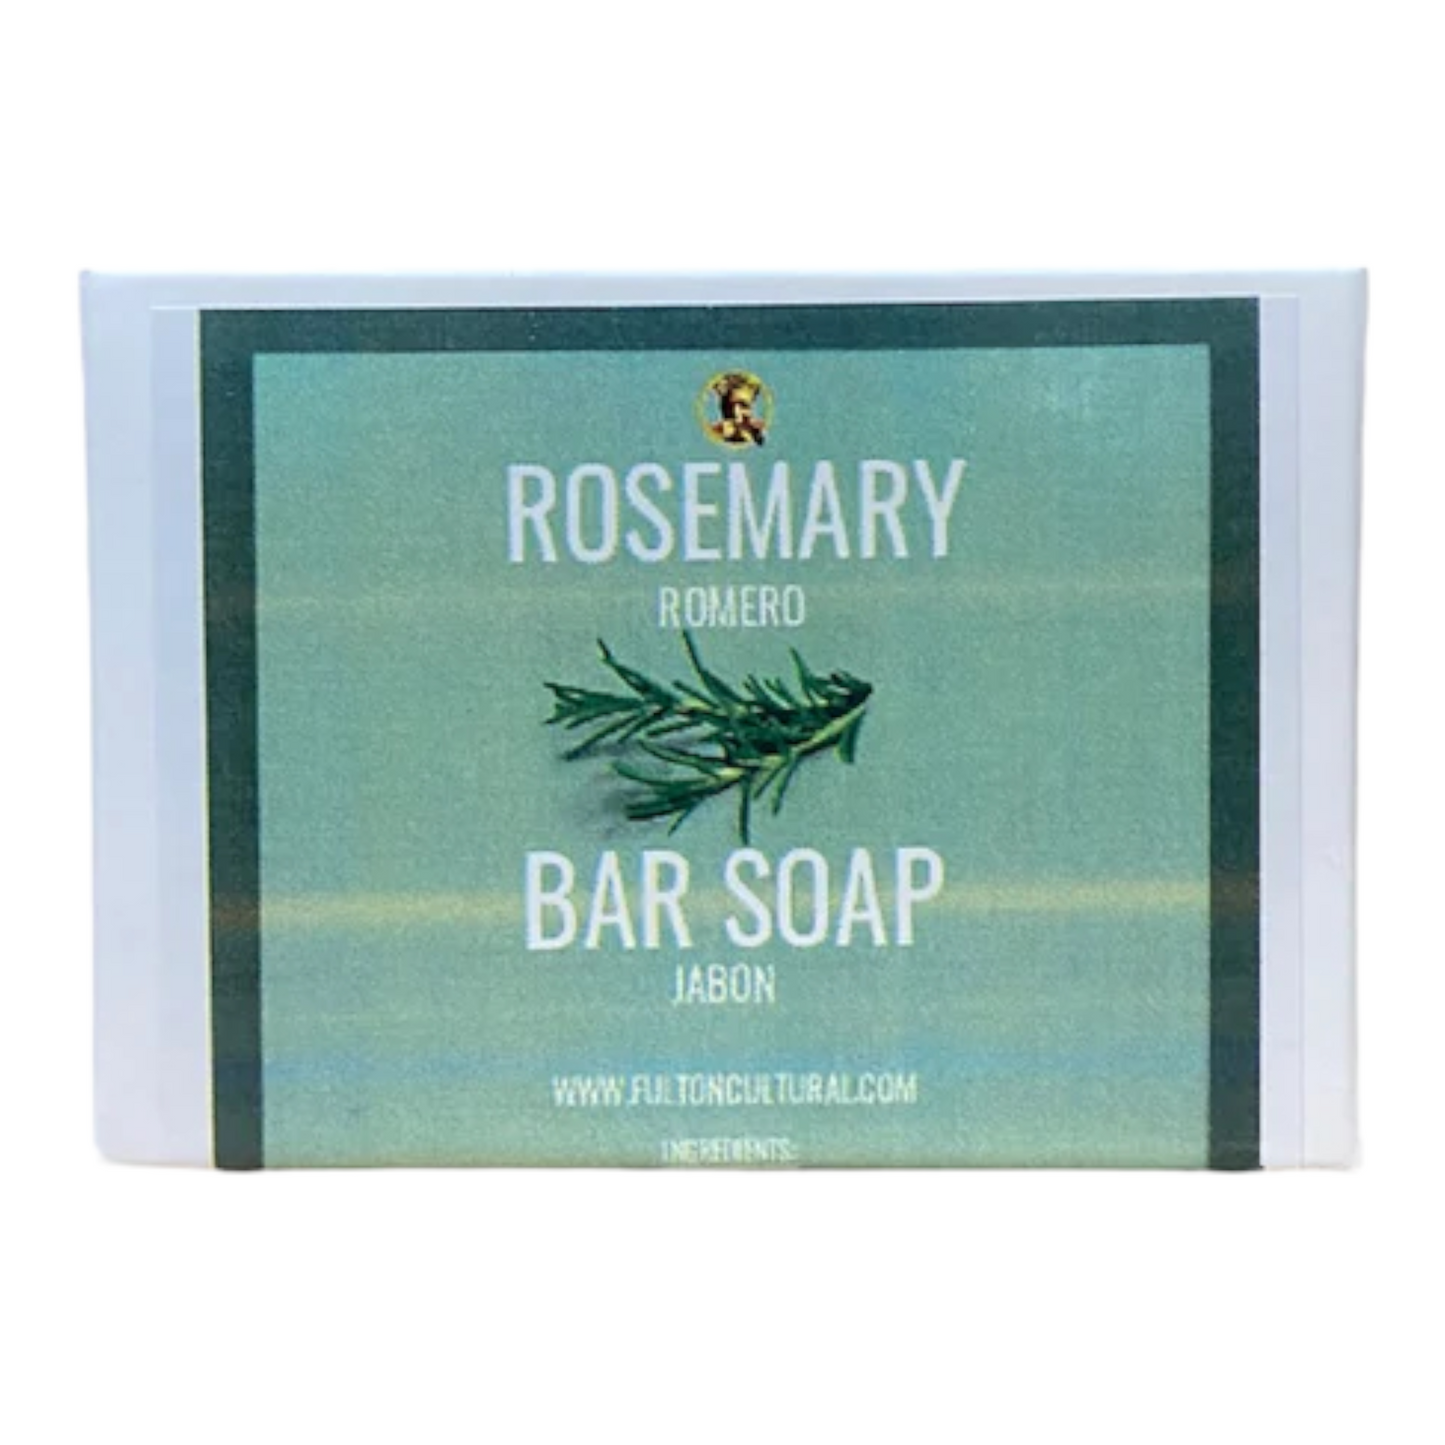 Rosemary Bar Soap